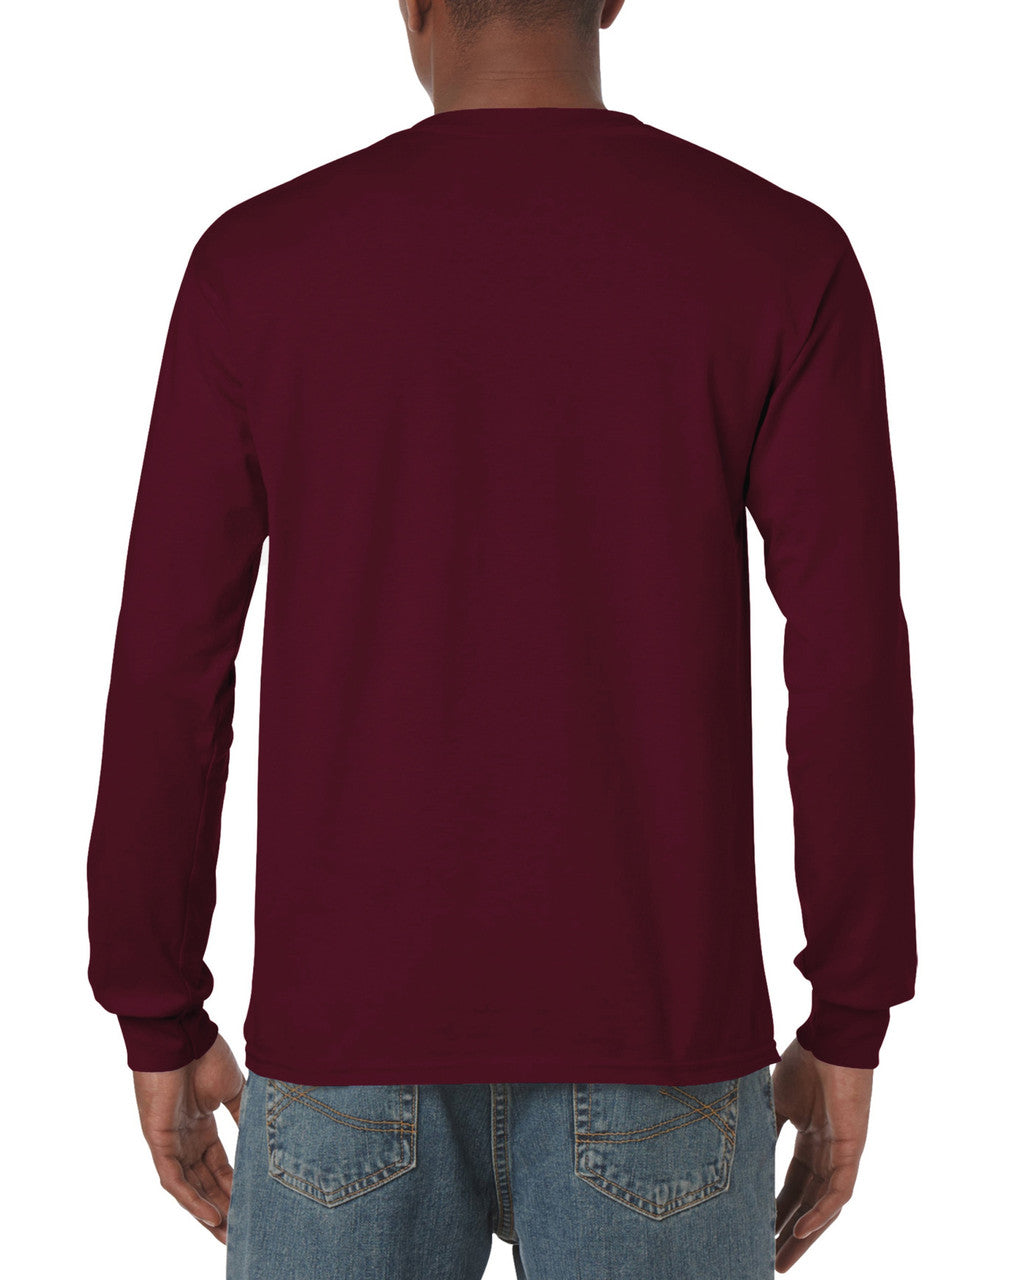 Long Sleeve T-Shirt - Maroon